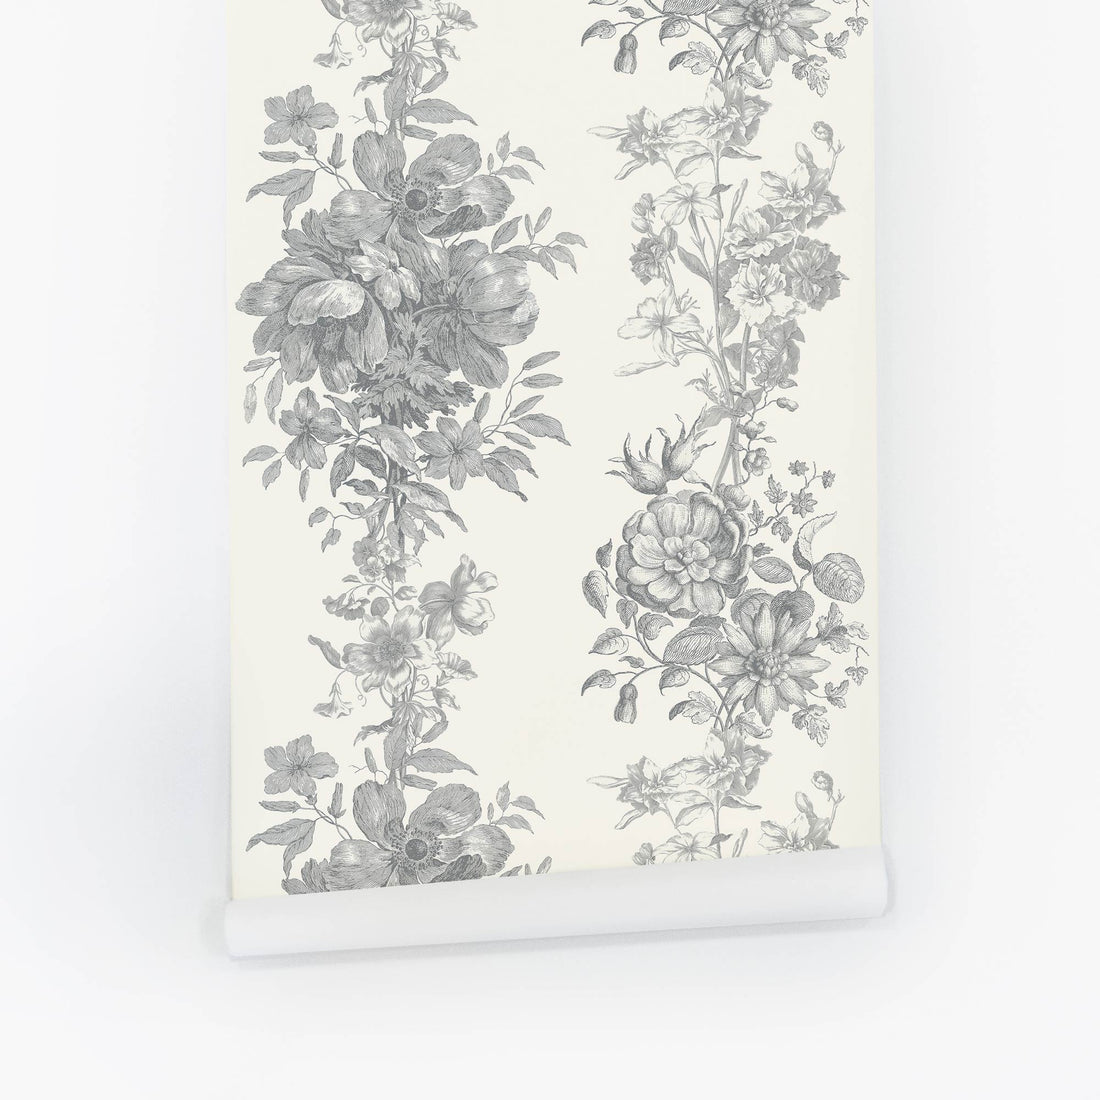 vintage wallpaper design with grey floral pattern